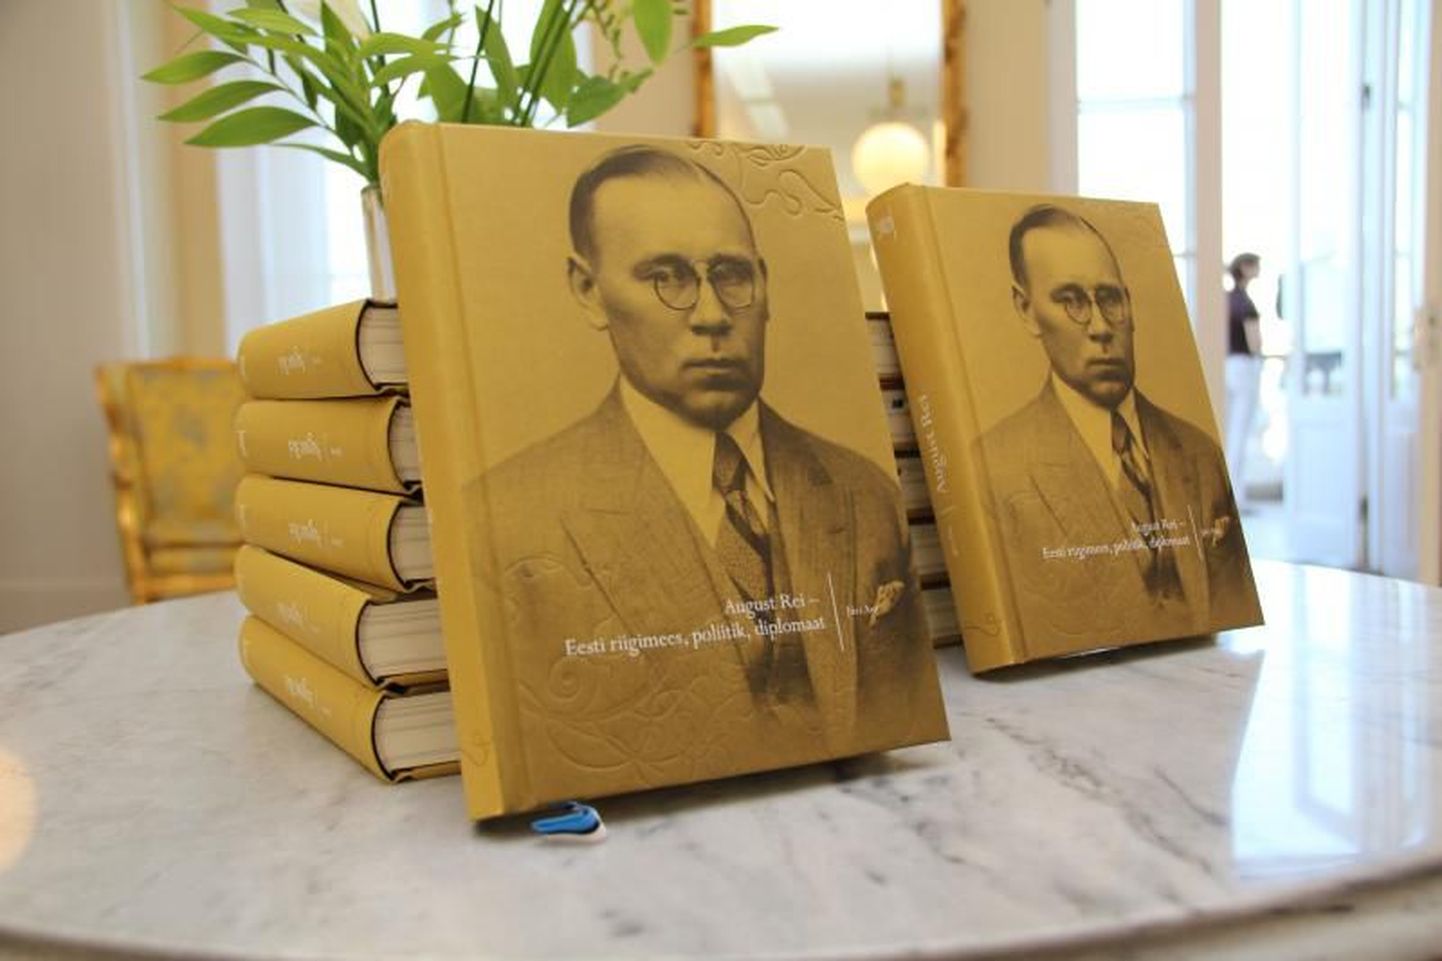 Jüri Anti koostatud monograafia «August Rei - Eesti riigimees, poliitik, diplomaat» on esimene rahvusarhiivi asutatud riigimeeste elulugude sarjas.